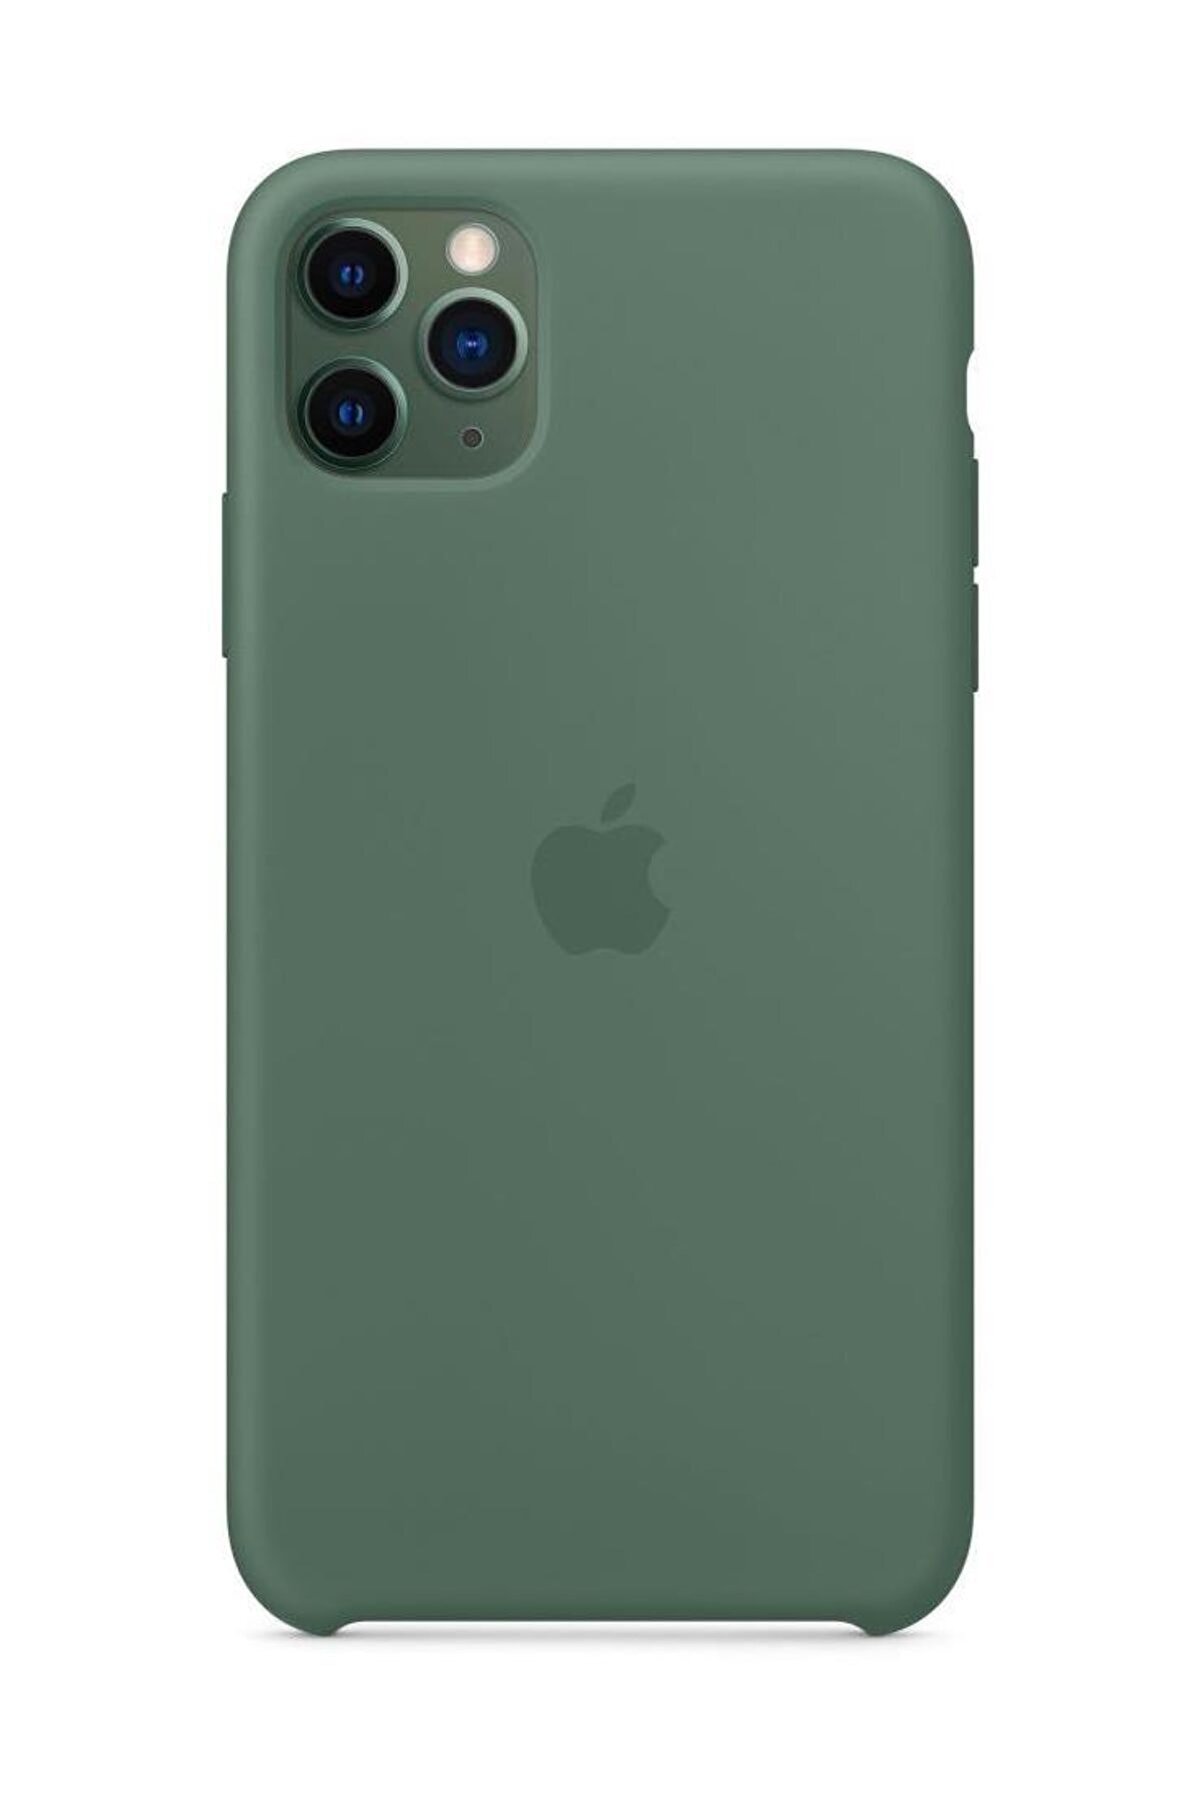 Telefon Aksesuarları Iphone 11 Pro Max Uyumlu Silikon Kılıf Kırmızı - Mwyv2zm/a (apple Türkiye Garantili)